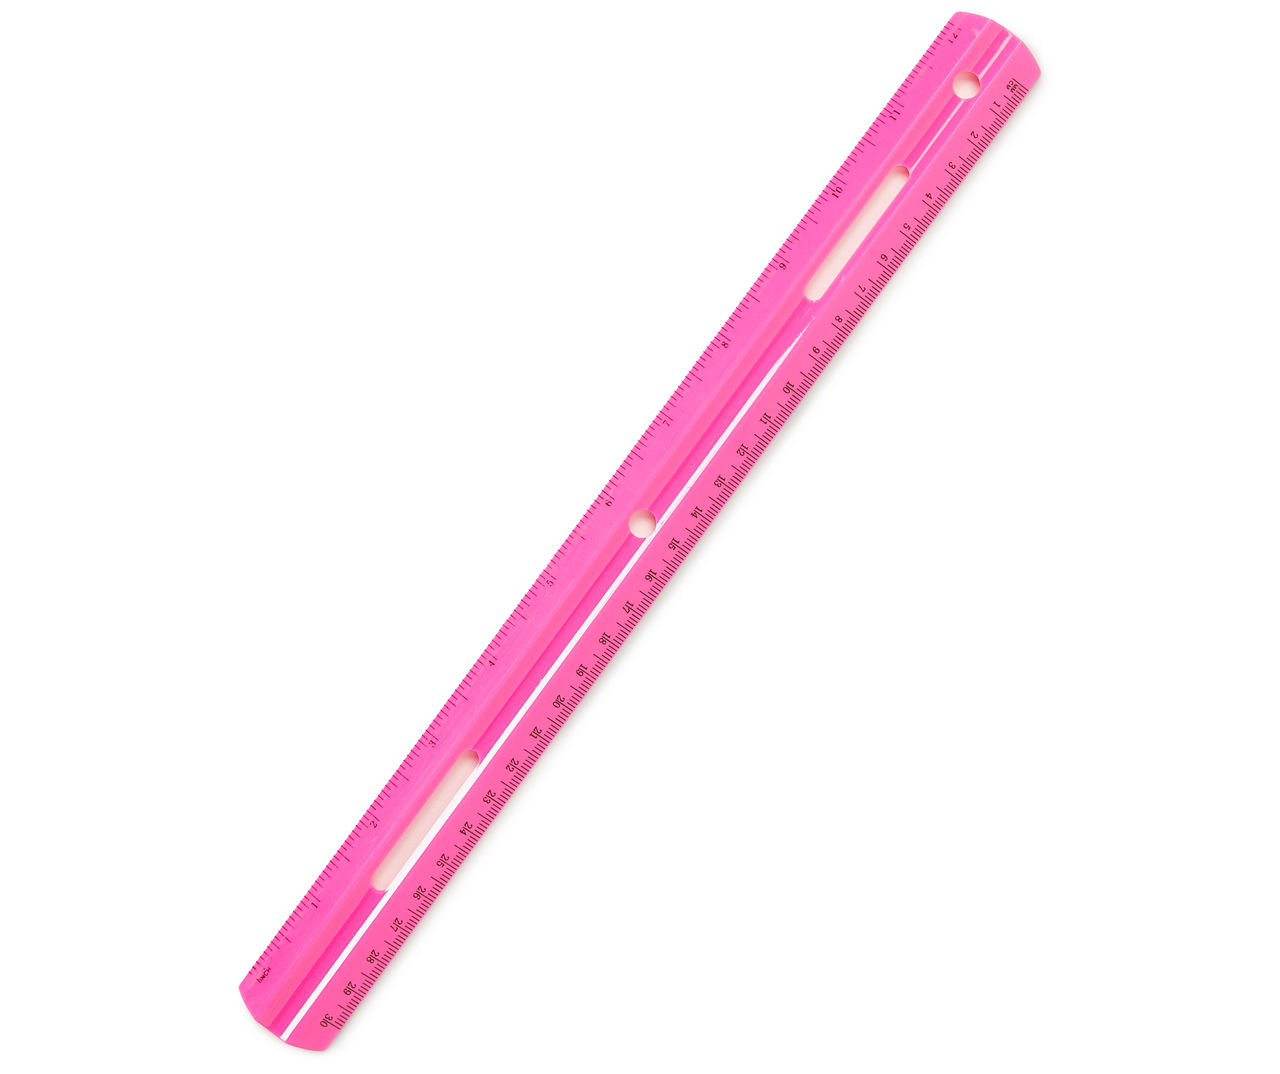 Big Lots Pink 12 Plastic Ruler